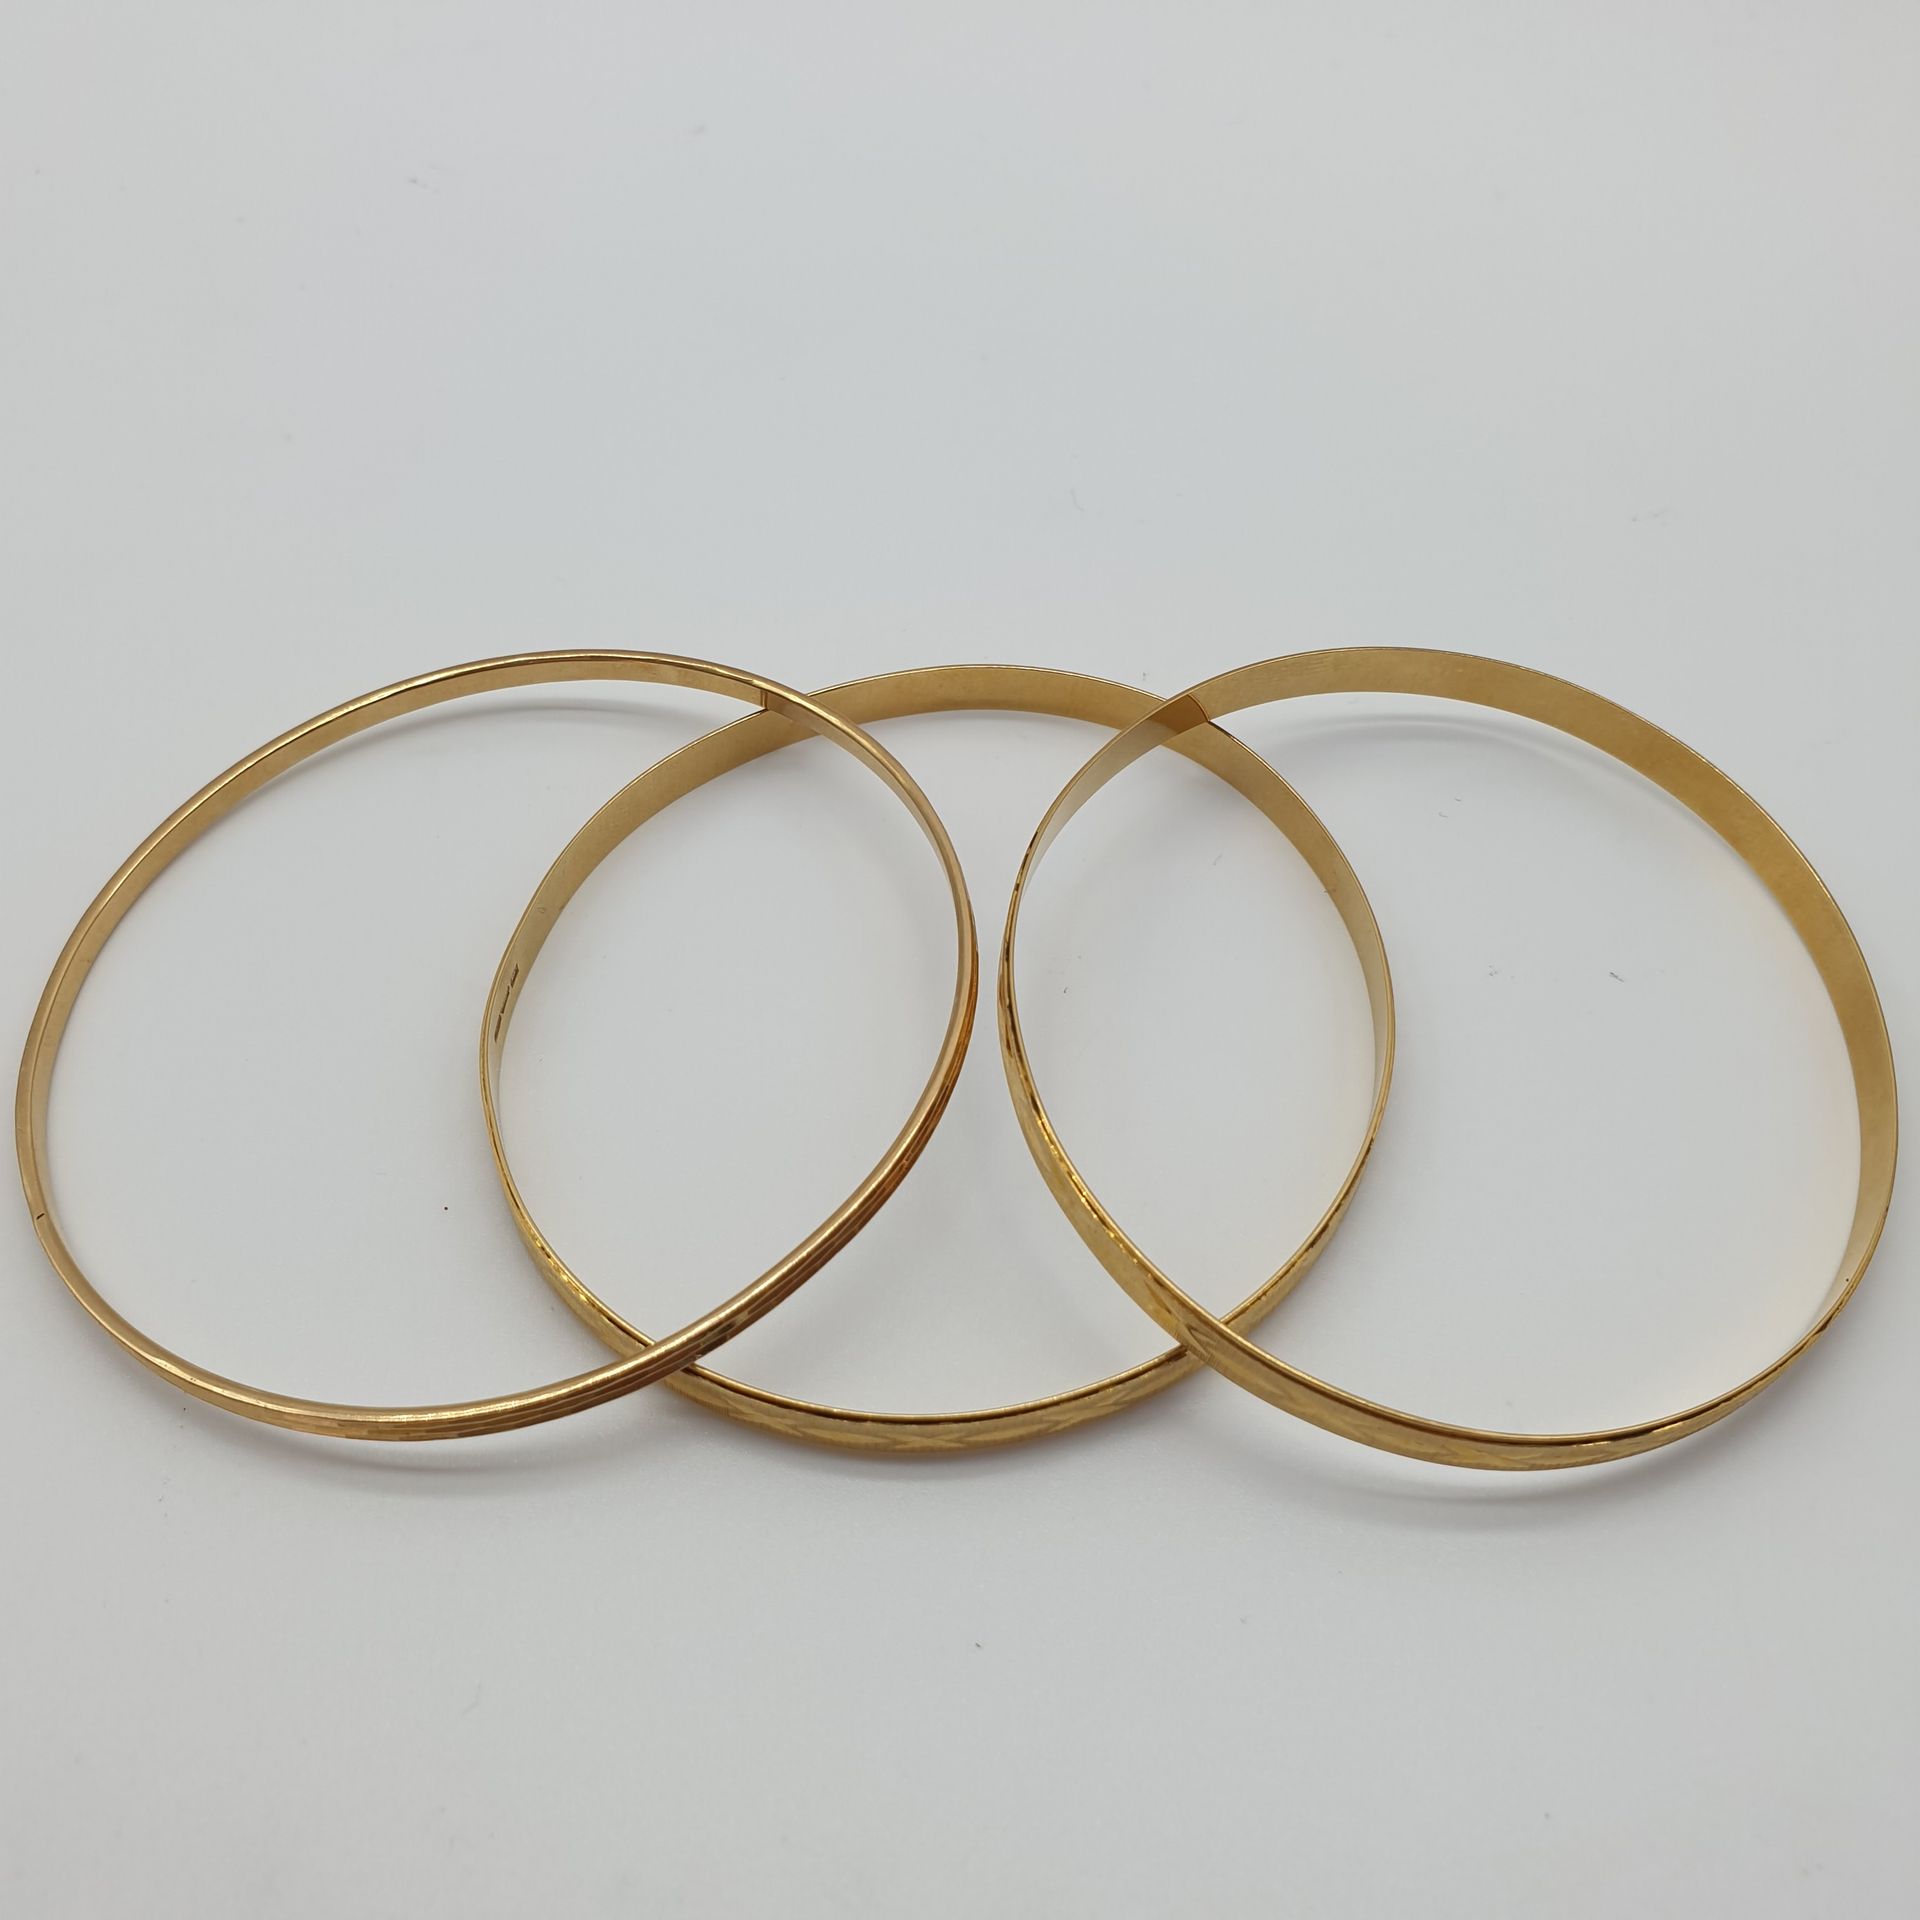 Null TRE bracciali in oro giallo 750° con anelli cesellati

peso: 26,99 g